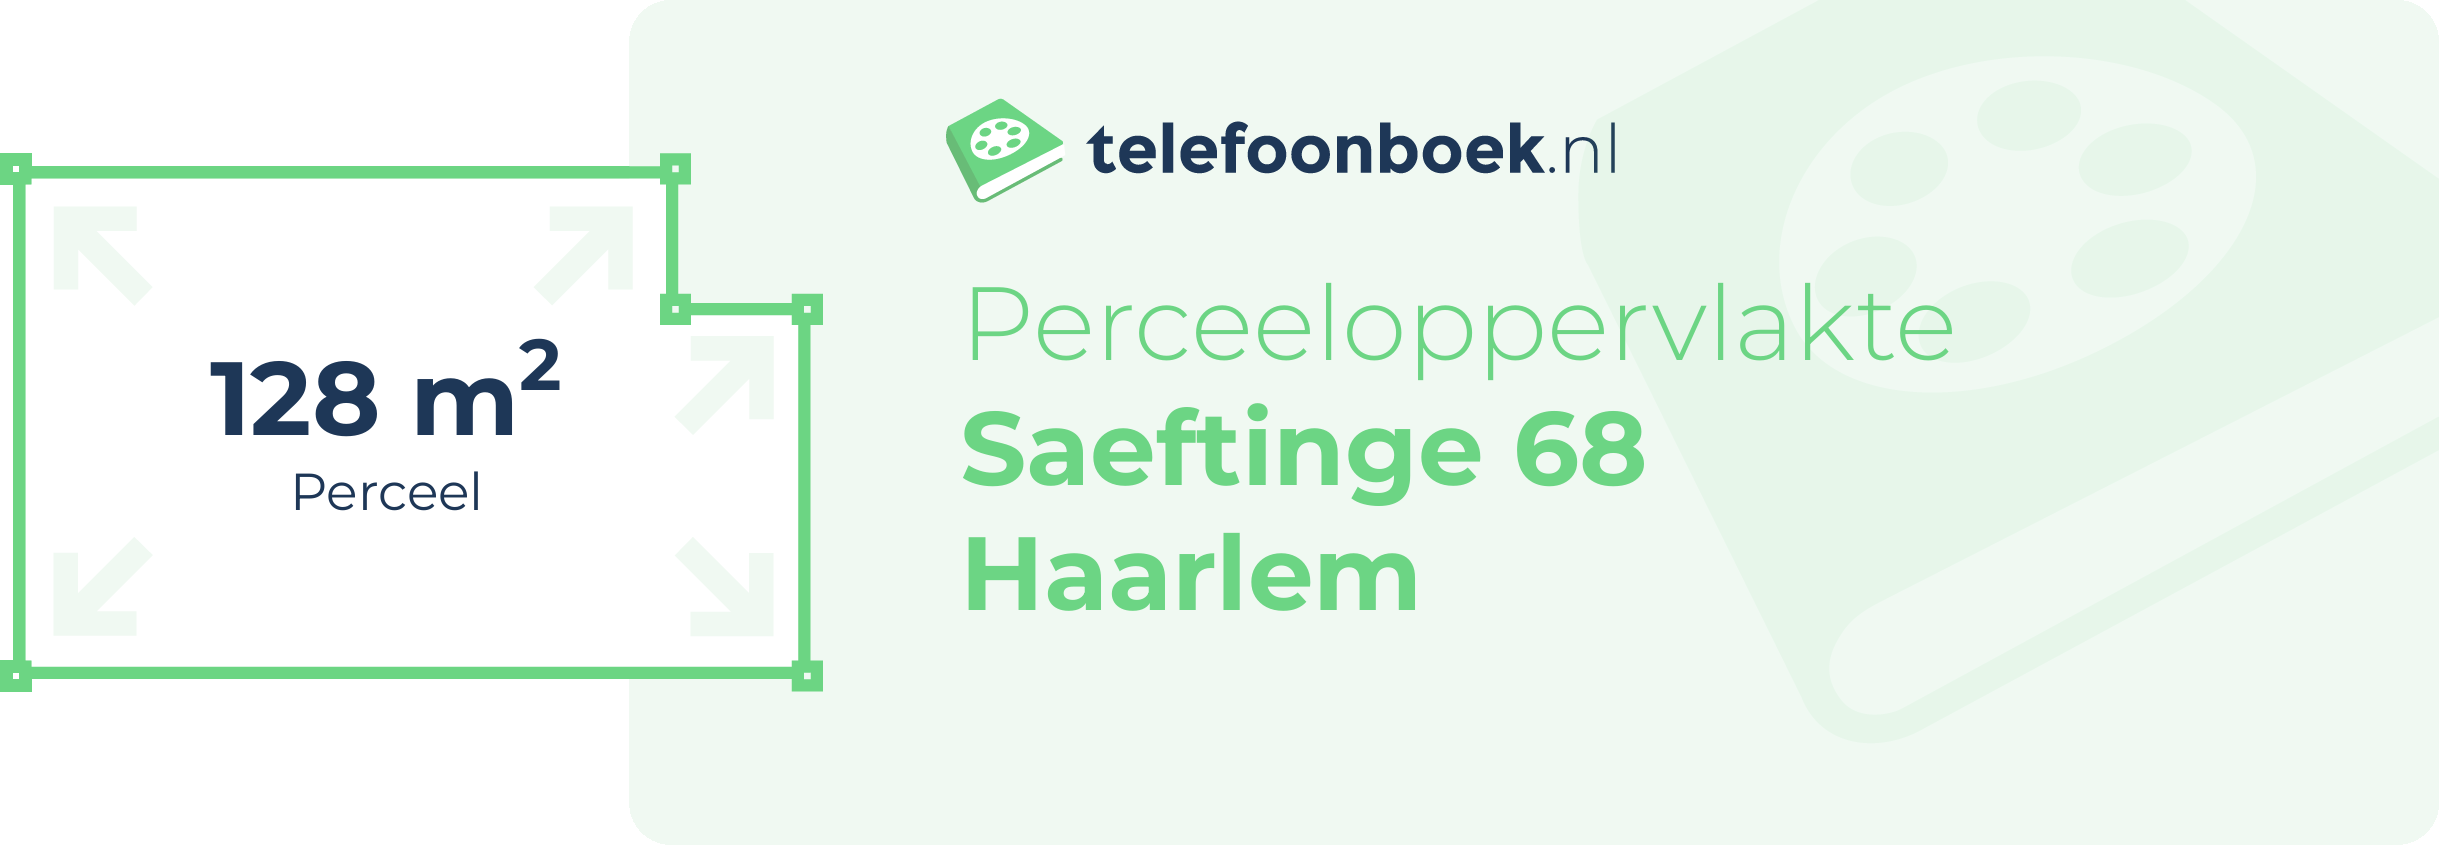 Perceeloppervlakte Saeftinge 68 Haarlem